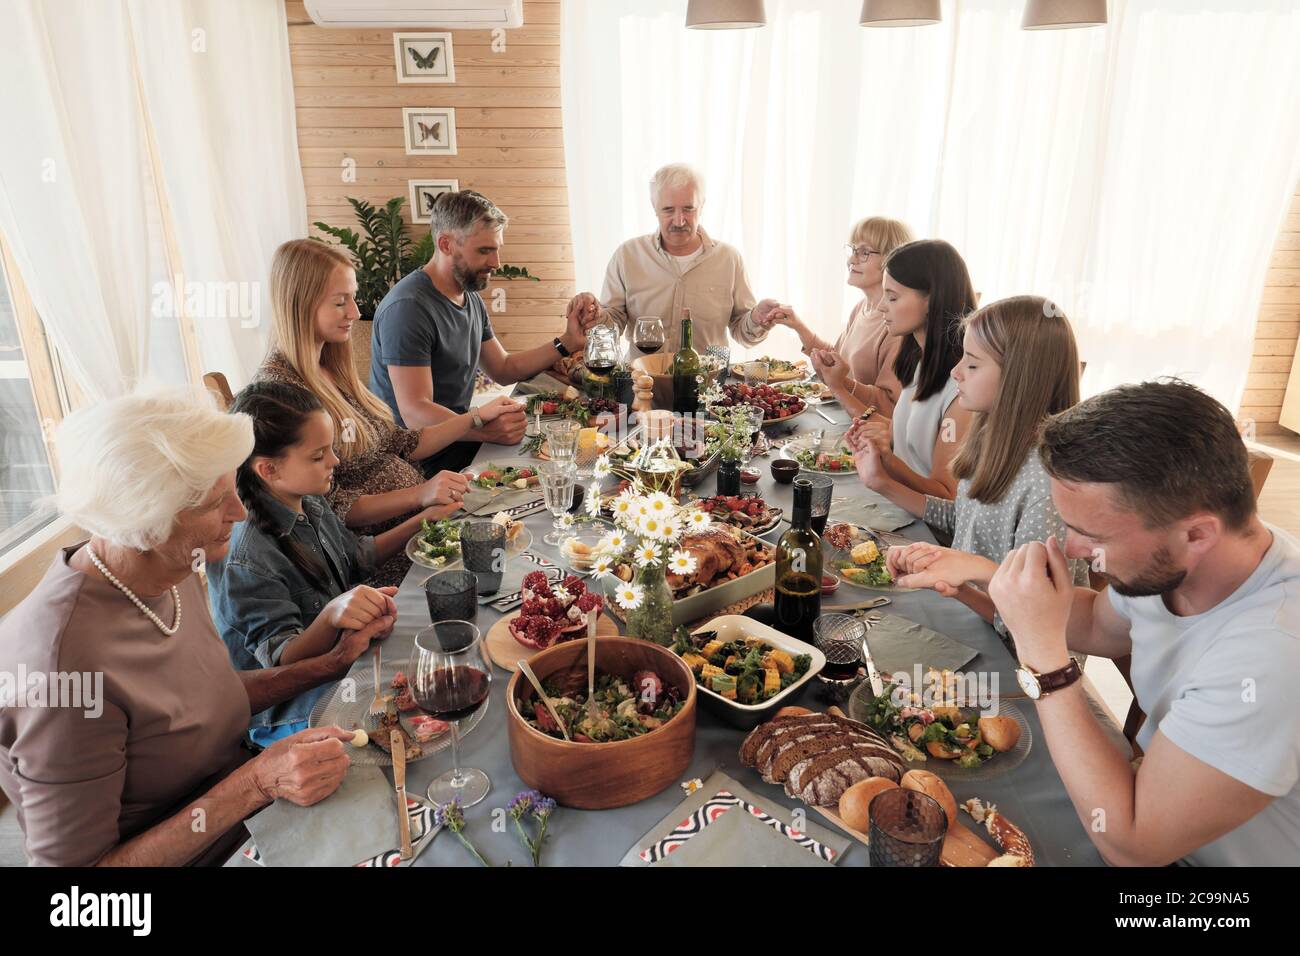 Große Familie am Tisch sitzend, Hände haltend und die Augen schließend, beten sie vor dem Essen Stockfoto